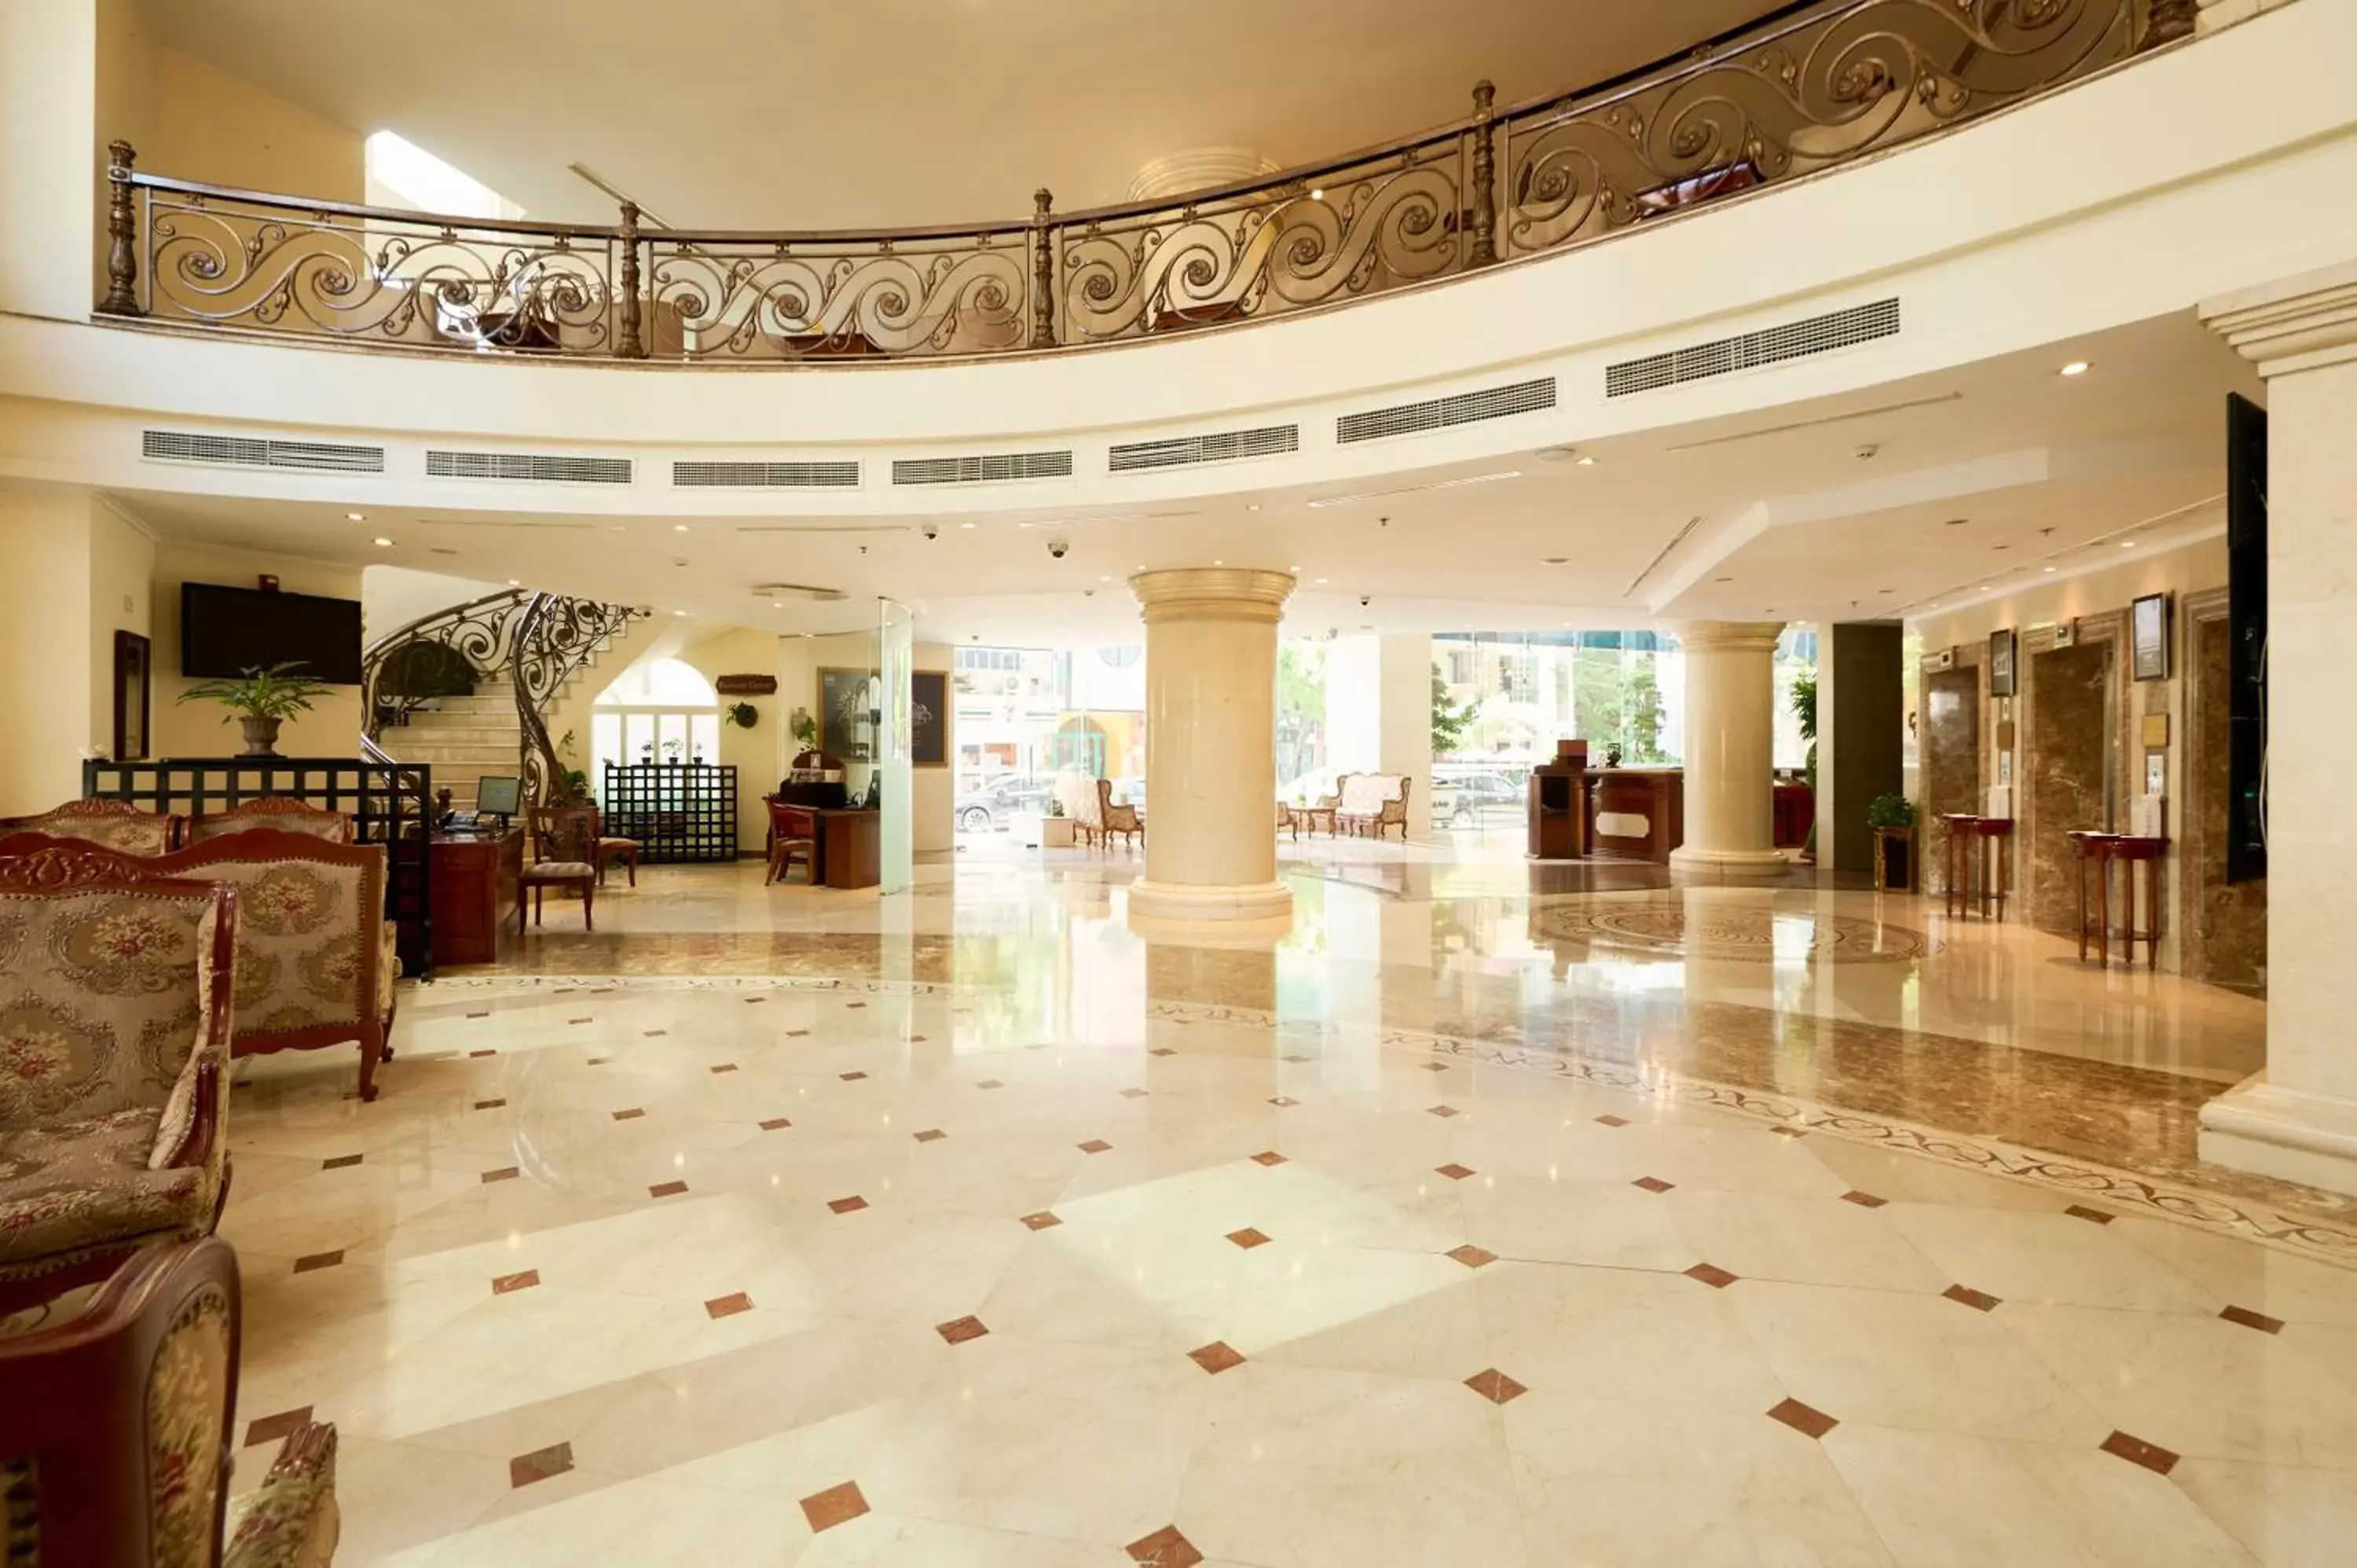 Lobby or reception in Hotel Grand Saigon